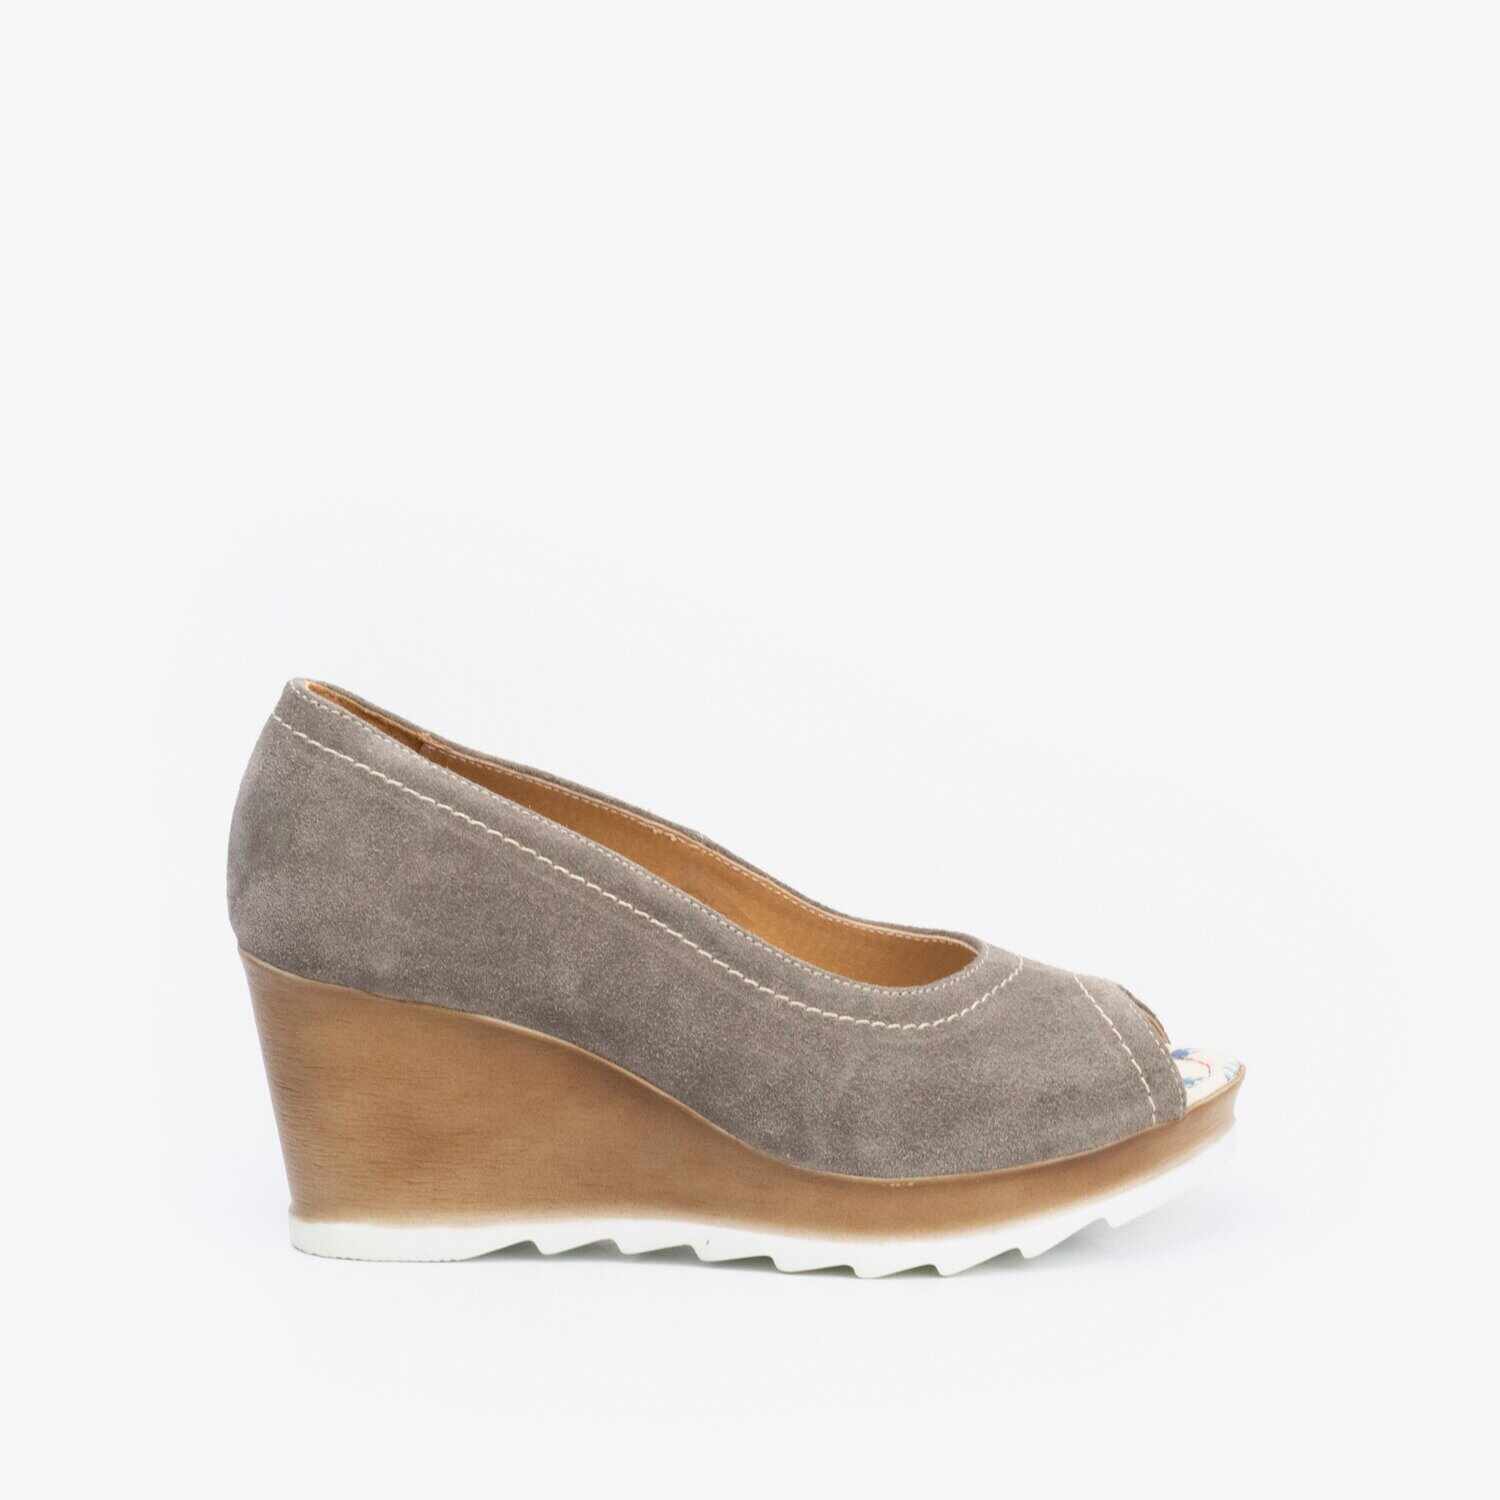 Pantofi dama casual cu platforma din piele naturala- 531-1 Gri Velur